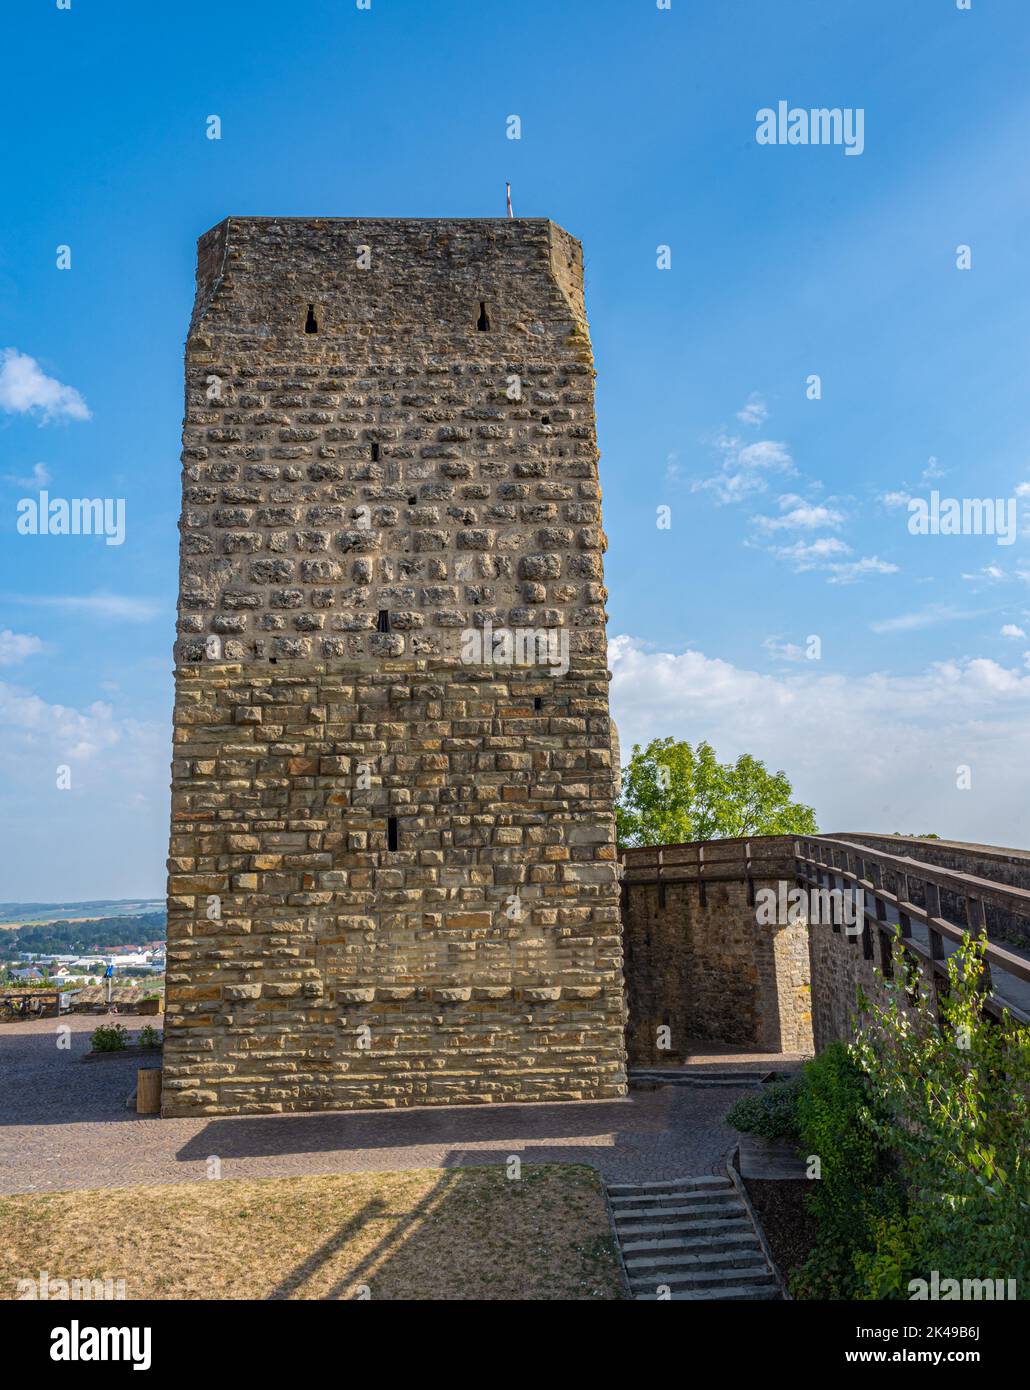 Parte de la torre roja de las fortificaciones históricas de Bad Wimpfen. Neckar Valley, Kraichgau, Baden-Württemberg, Alemania, Europa Foto de stock